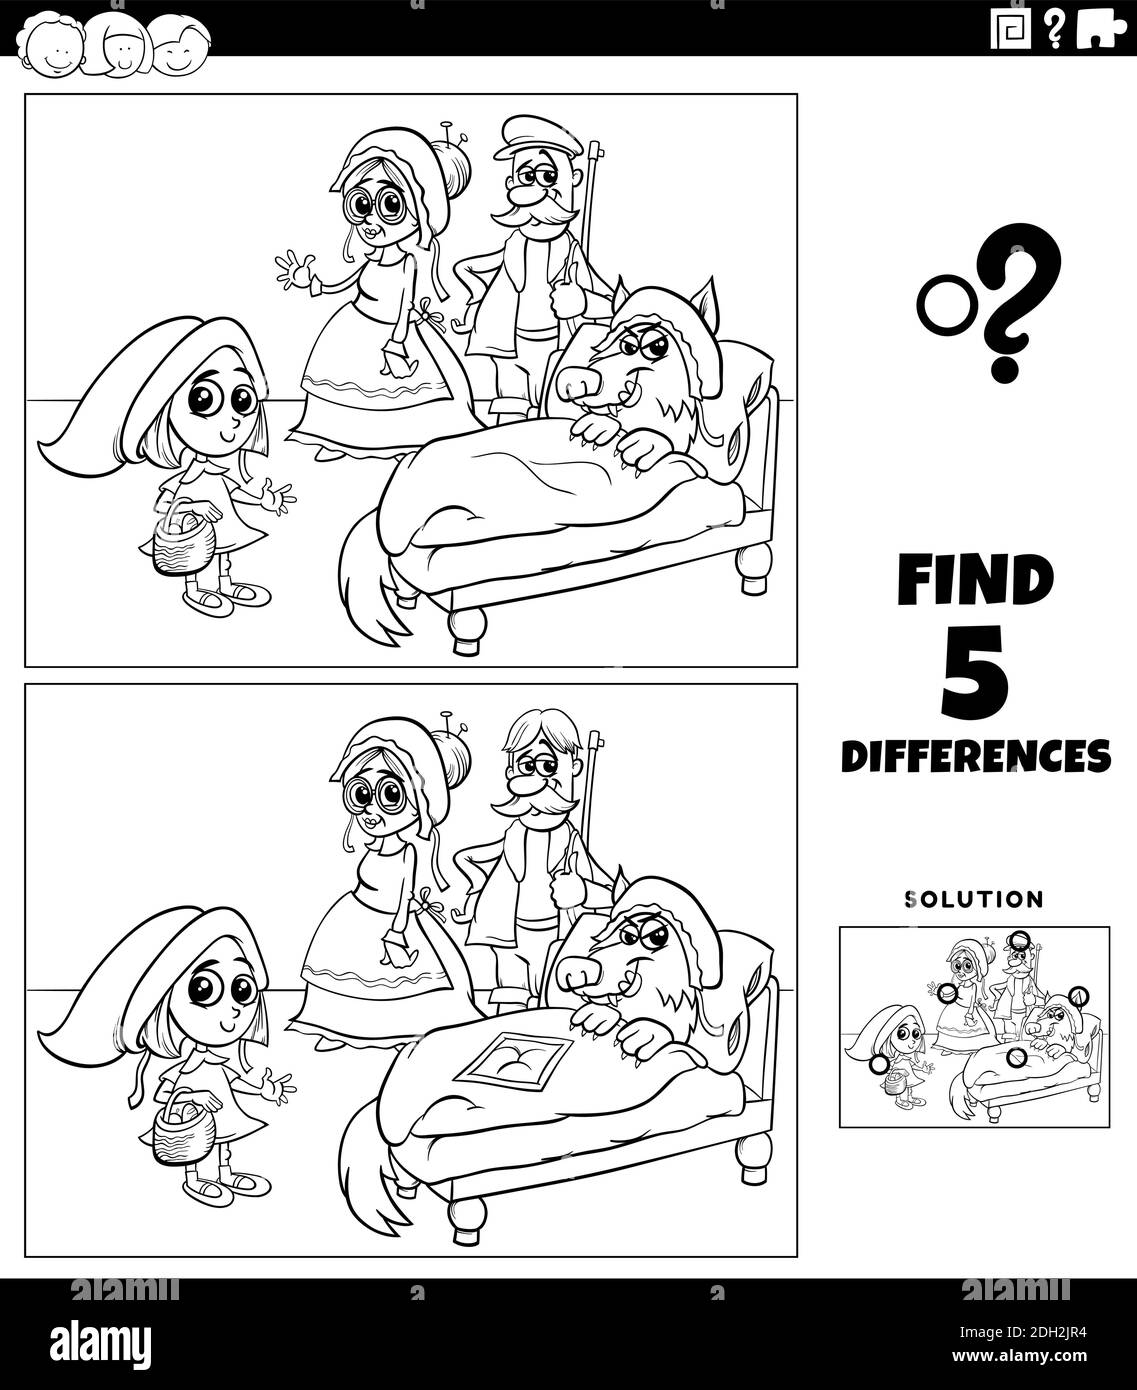 Schwarz-Weiß-Cartoon-Illustration der Suche nach den Unterschieden zwischen Bilder Lernspiel für Kinder mit Rotkäppchen Und Wolf und Stock Vektor